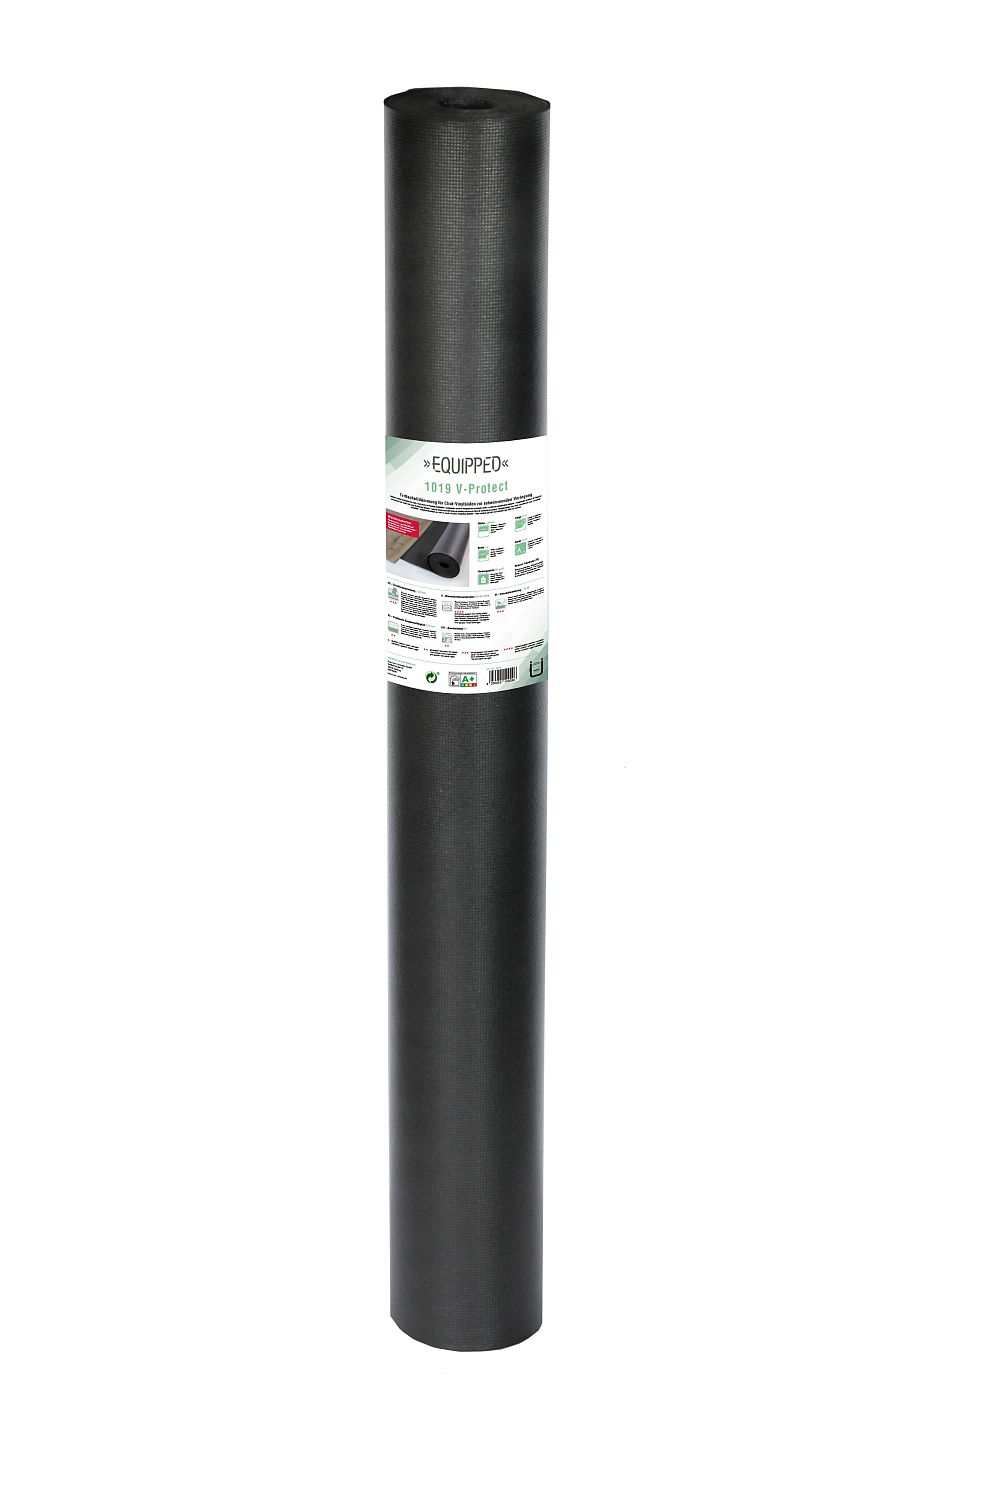 EQUIPPED 1019 V-Protect (1mm) - 15m²/Rolle - Breite 1m - Unterlage / Trittschalldämmung für Vinyl